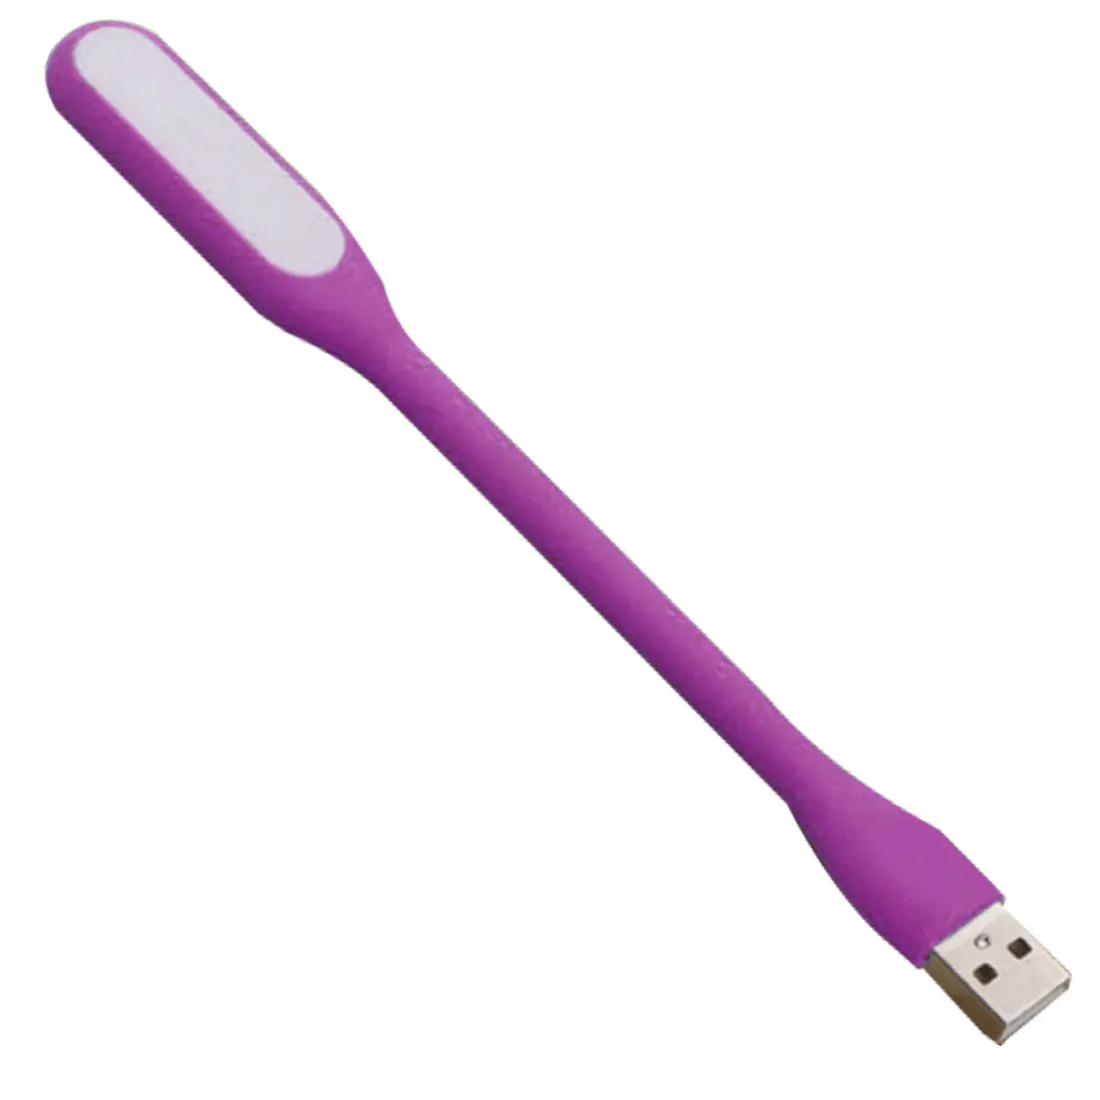 Мини Гибкий светодиодный светильник USB ночной Светильник s настольная лампа для чтения книга светильник гаджеты usb глаз ручной светильник для power Bank PC ноутбук Noteboo - Испускаемый цвет: Purple